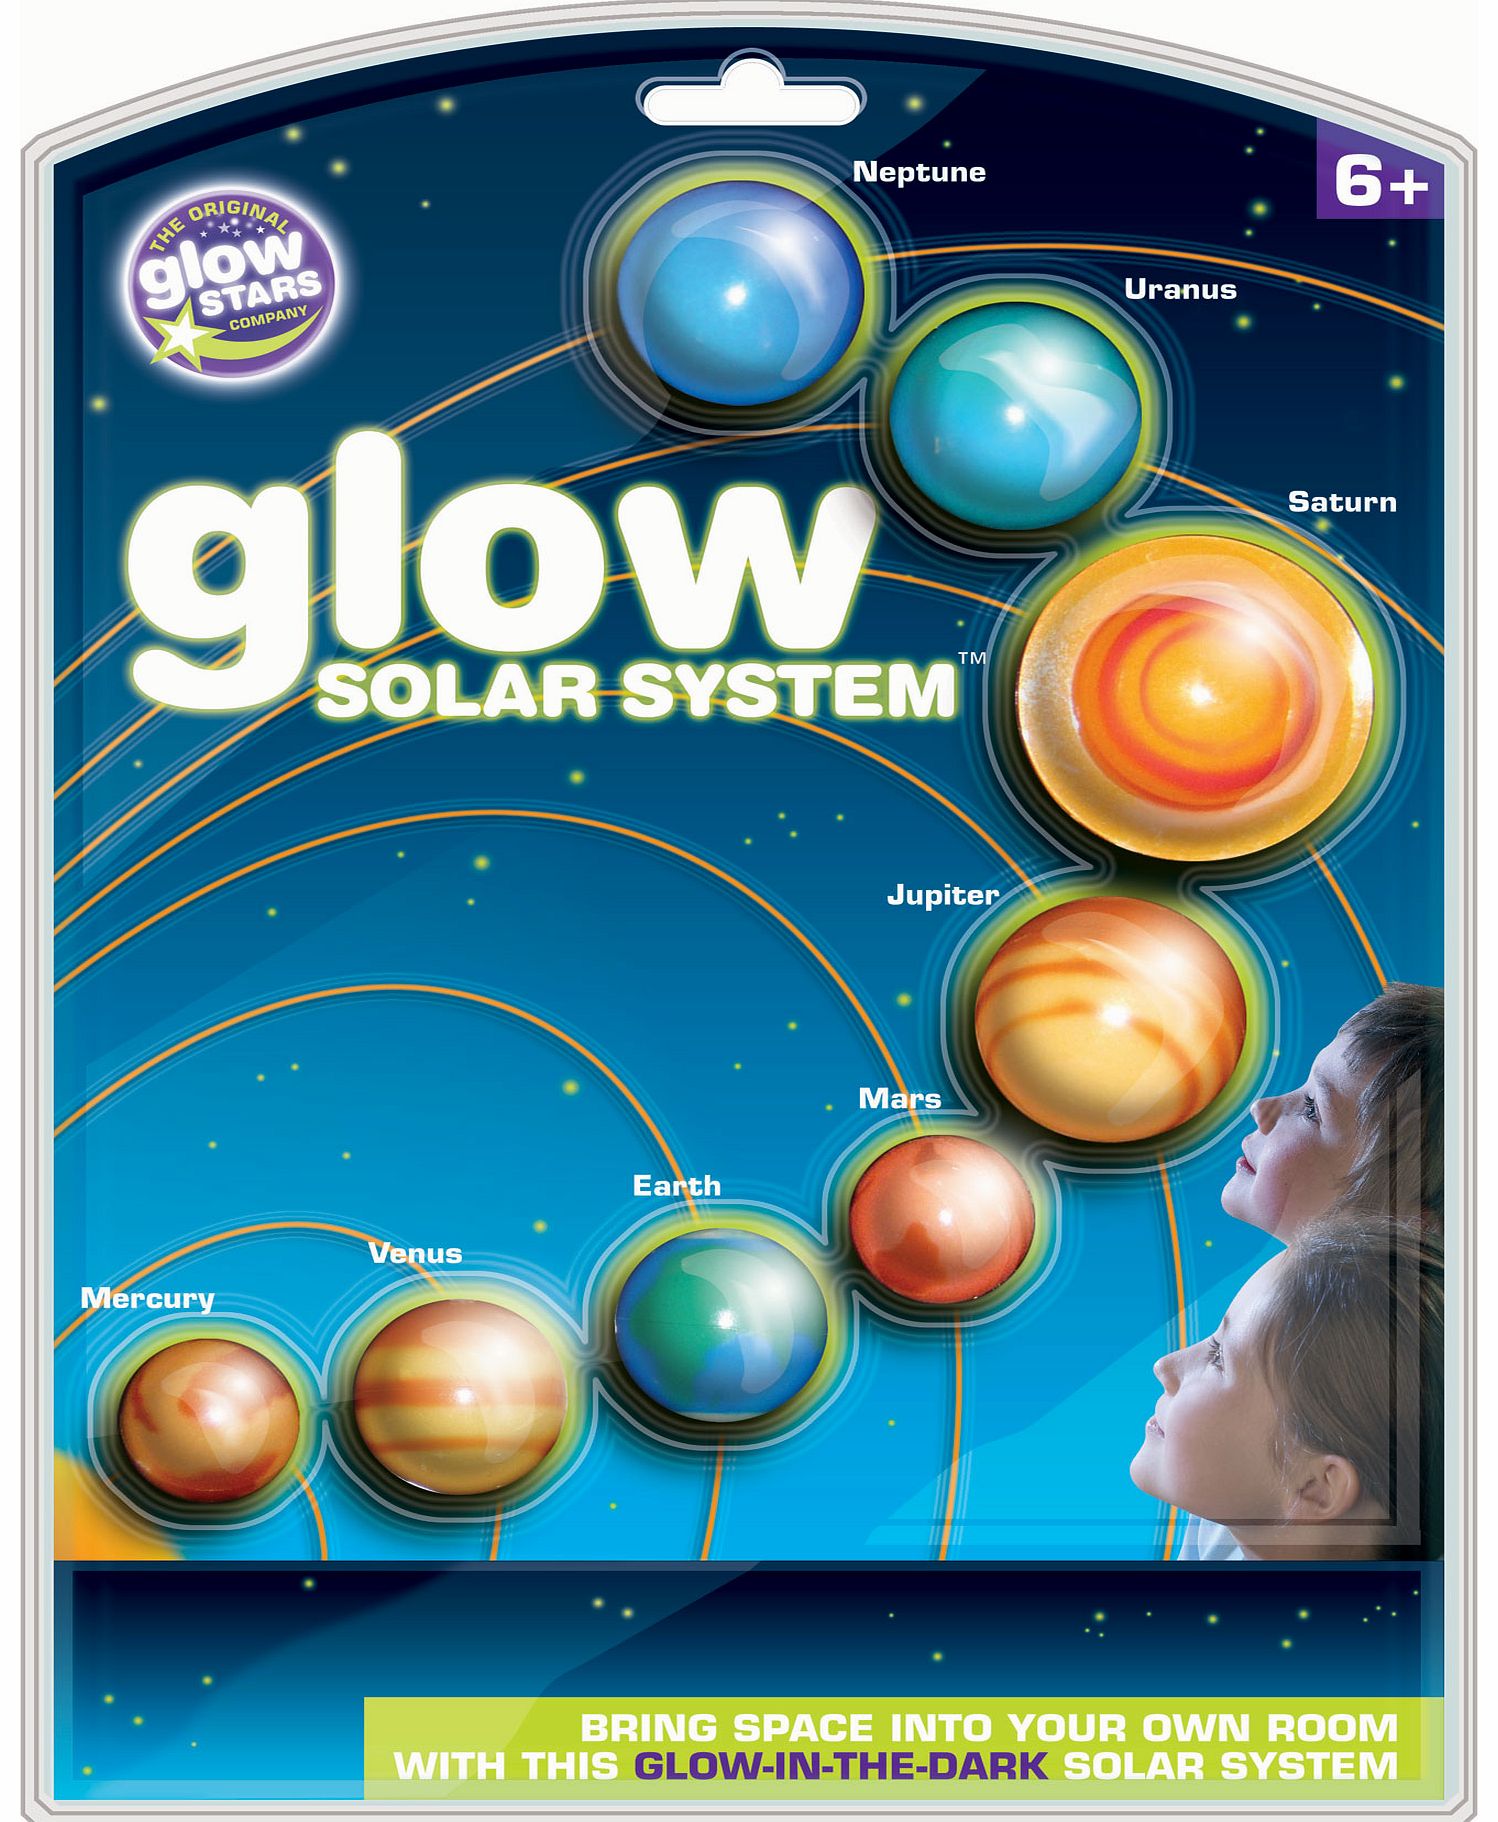 The Original Glow Stars Glow Solar System